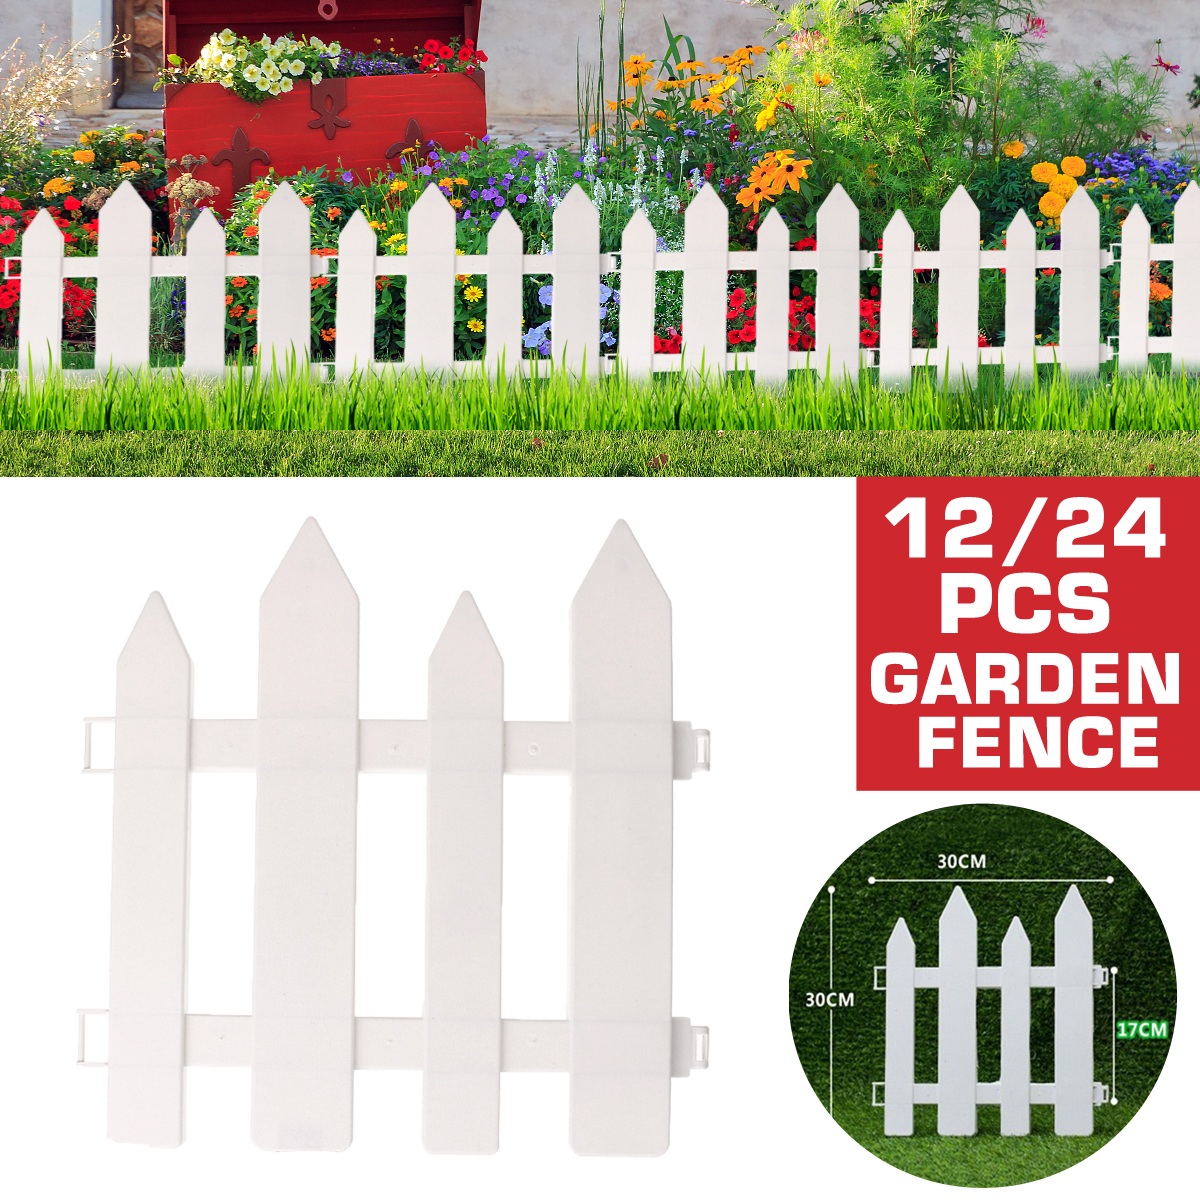 1224PCS-Outdoor-PVC-Plastic-White-Fence-Garden-Flowerpot-Parterre-Pet-Fence-Decoration-Dog-Kennel-Ca-1741797-1